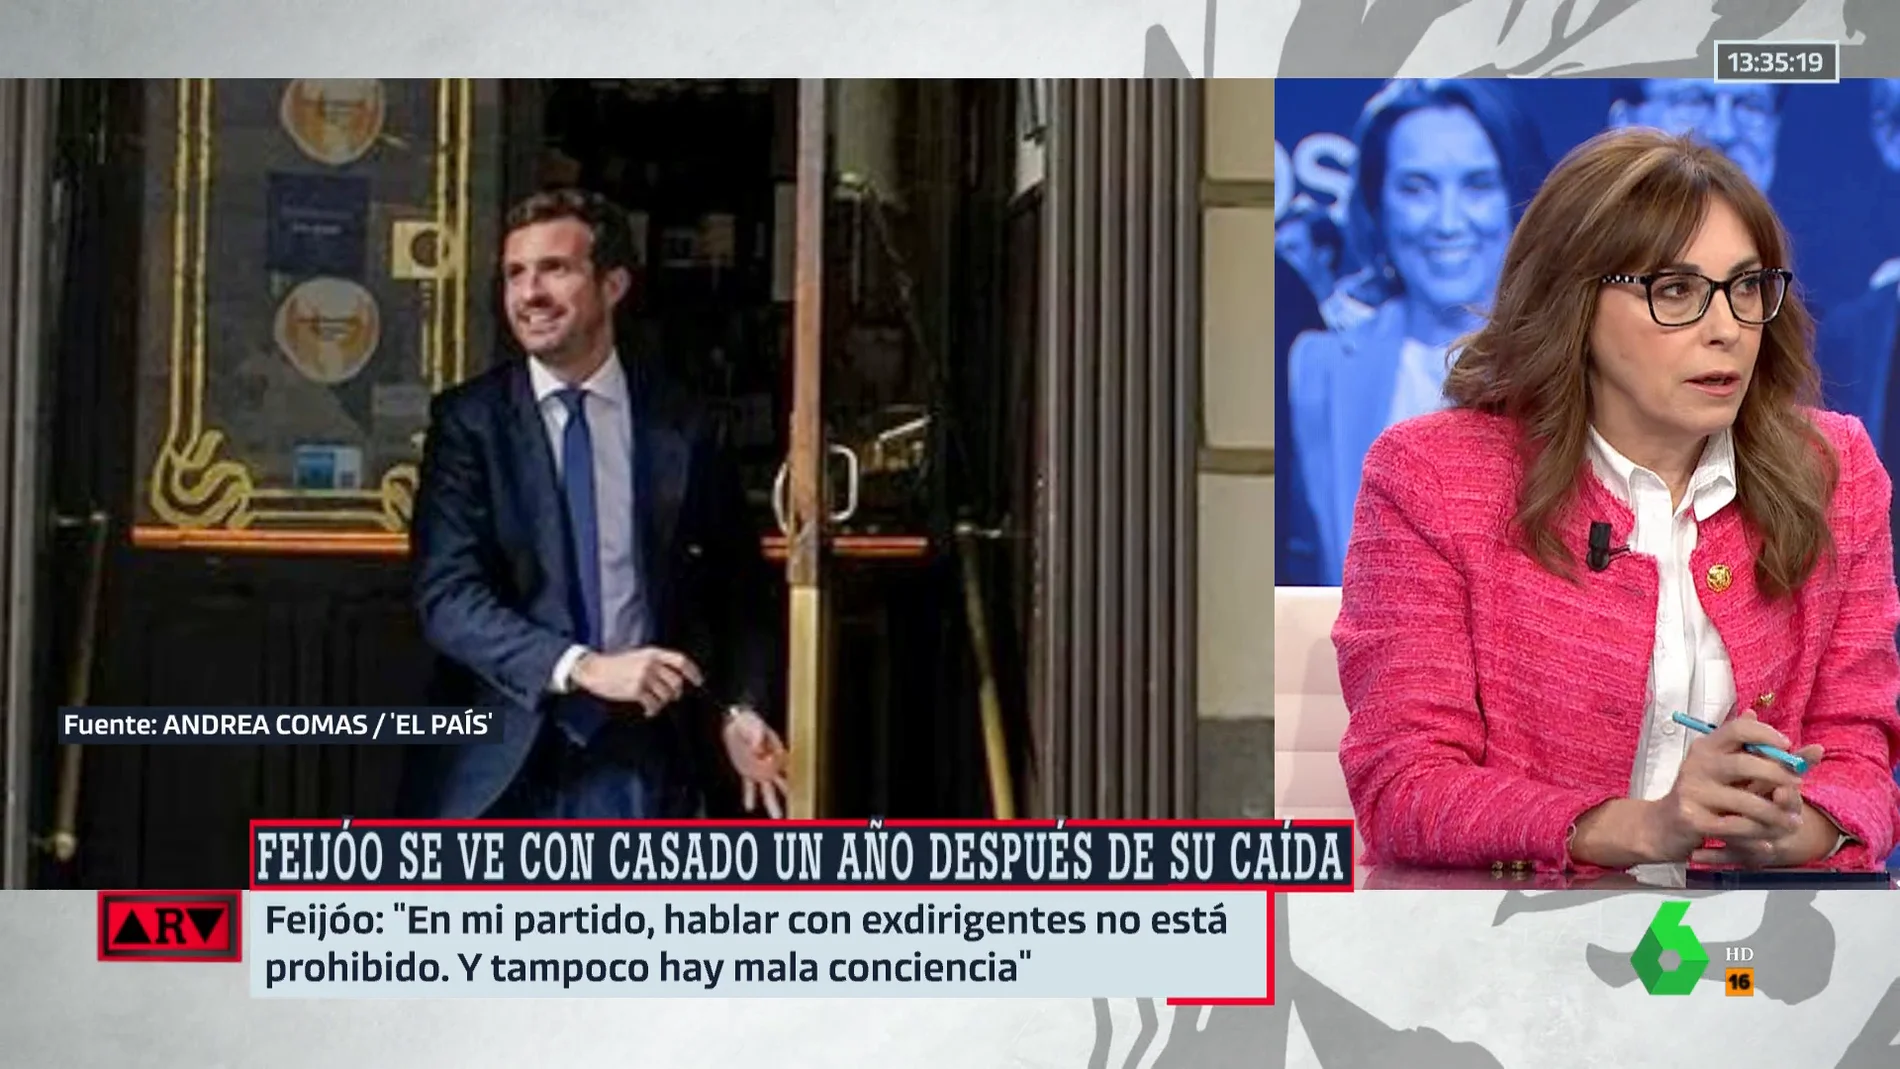 Angélica Rubio: "Casado ha sido más caballero con el PP y Feijóo de lo que fueron con él"